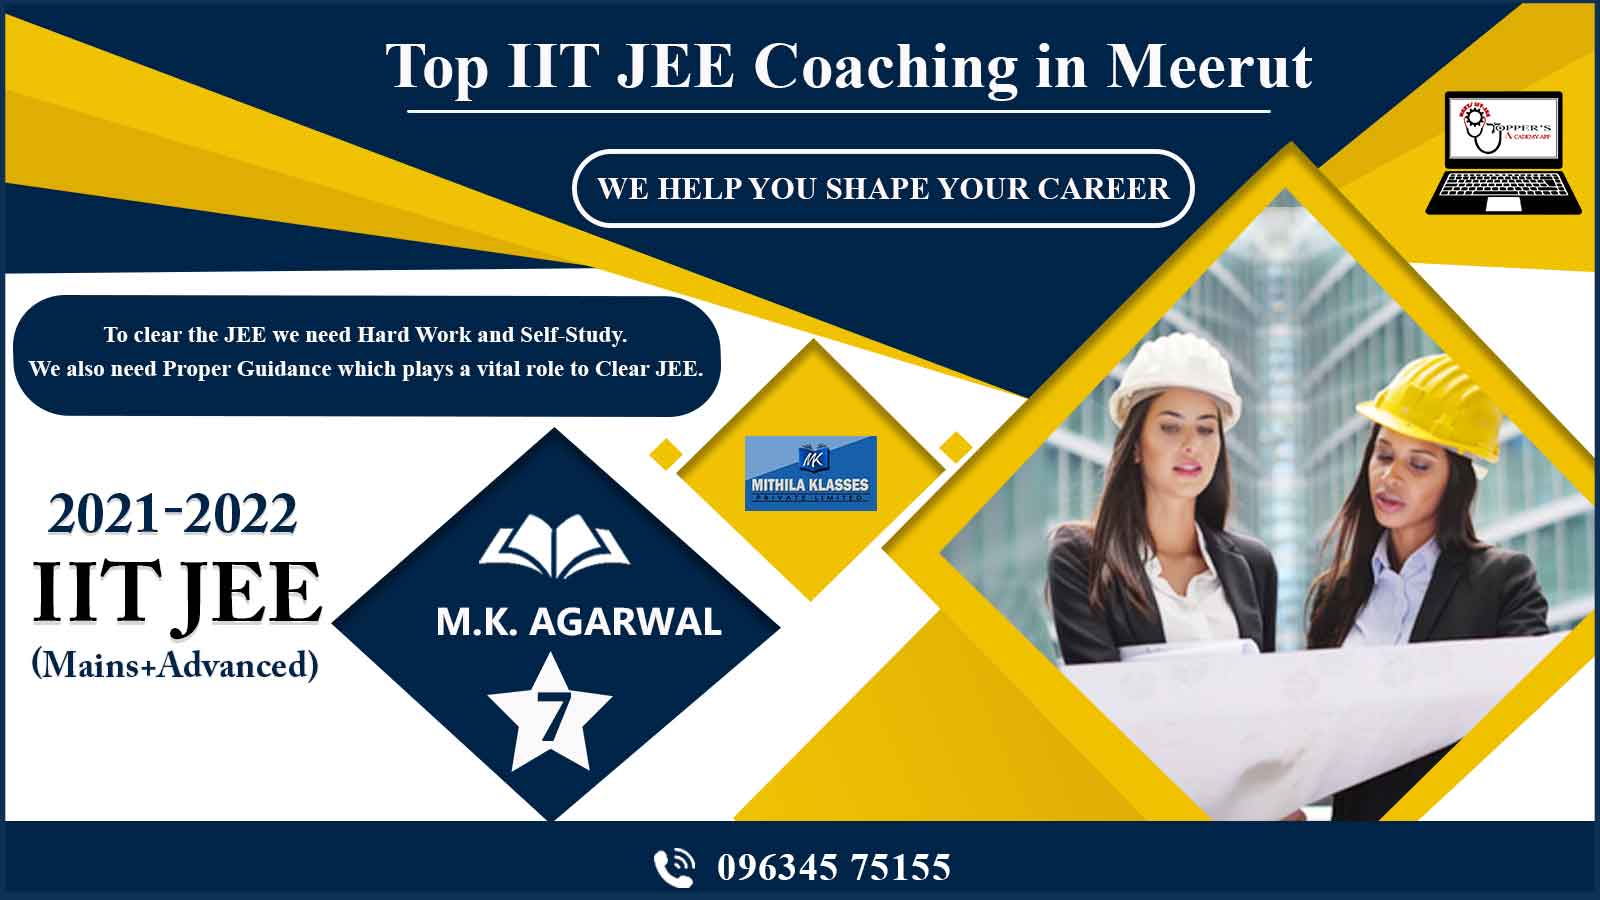 M.K. Agarwal IIT JEE Coaching in Meerut